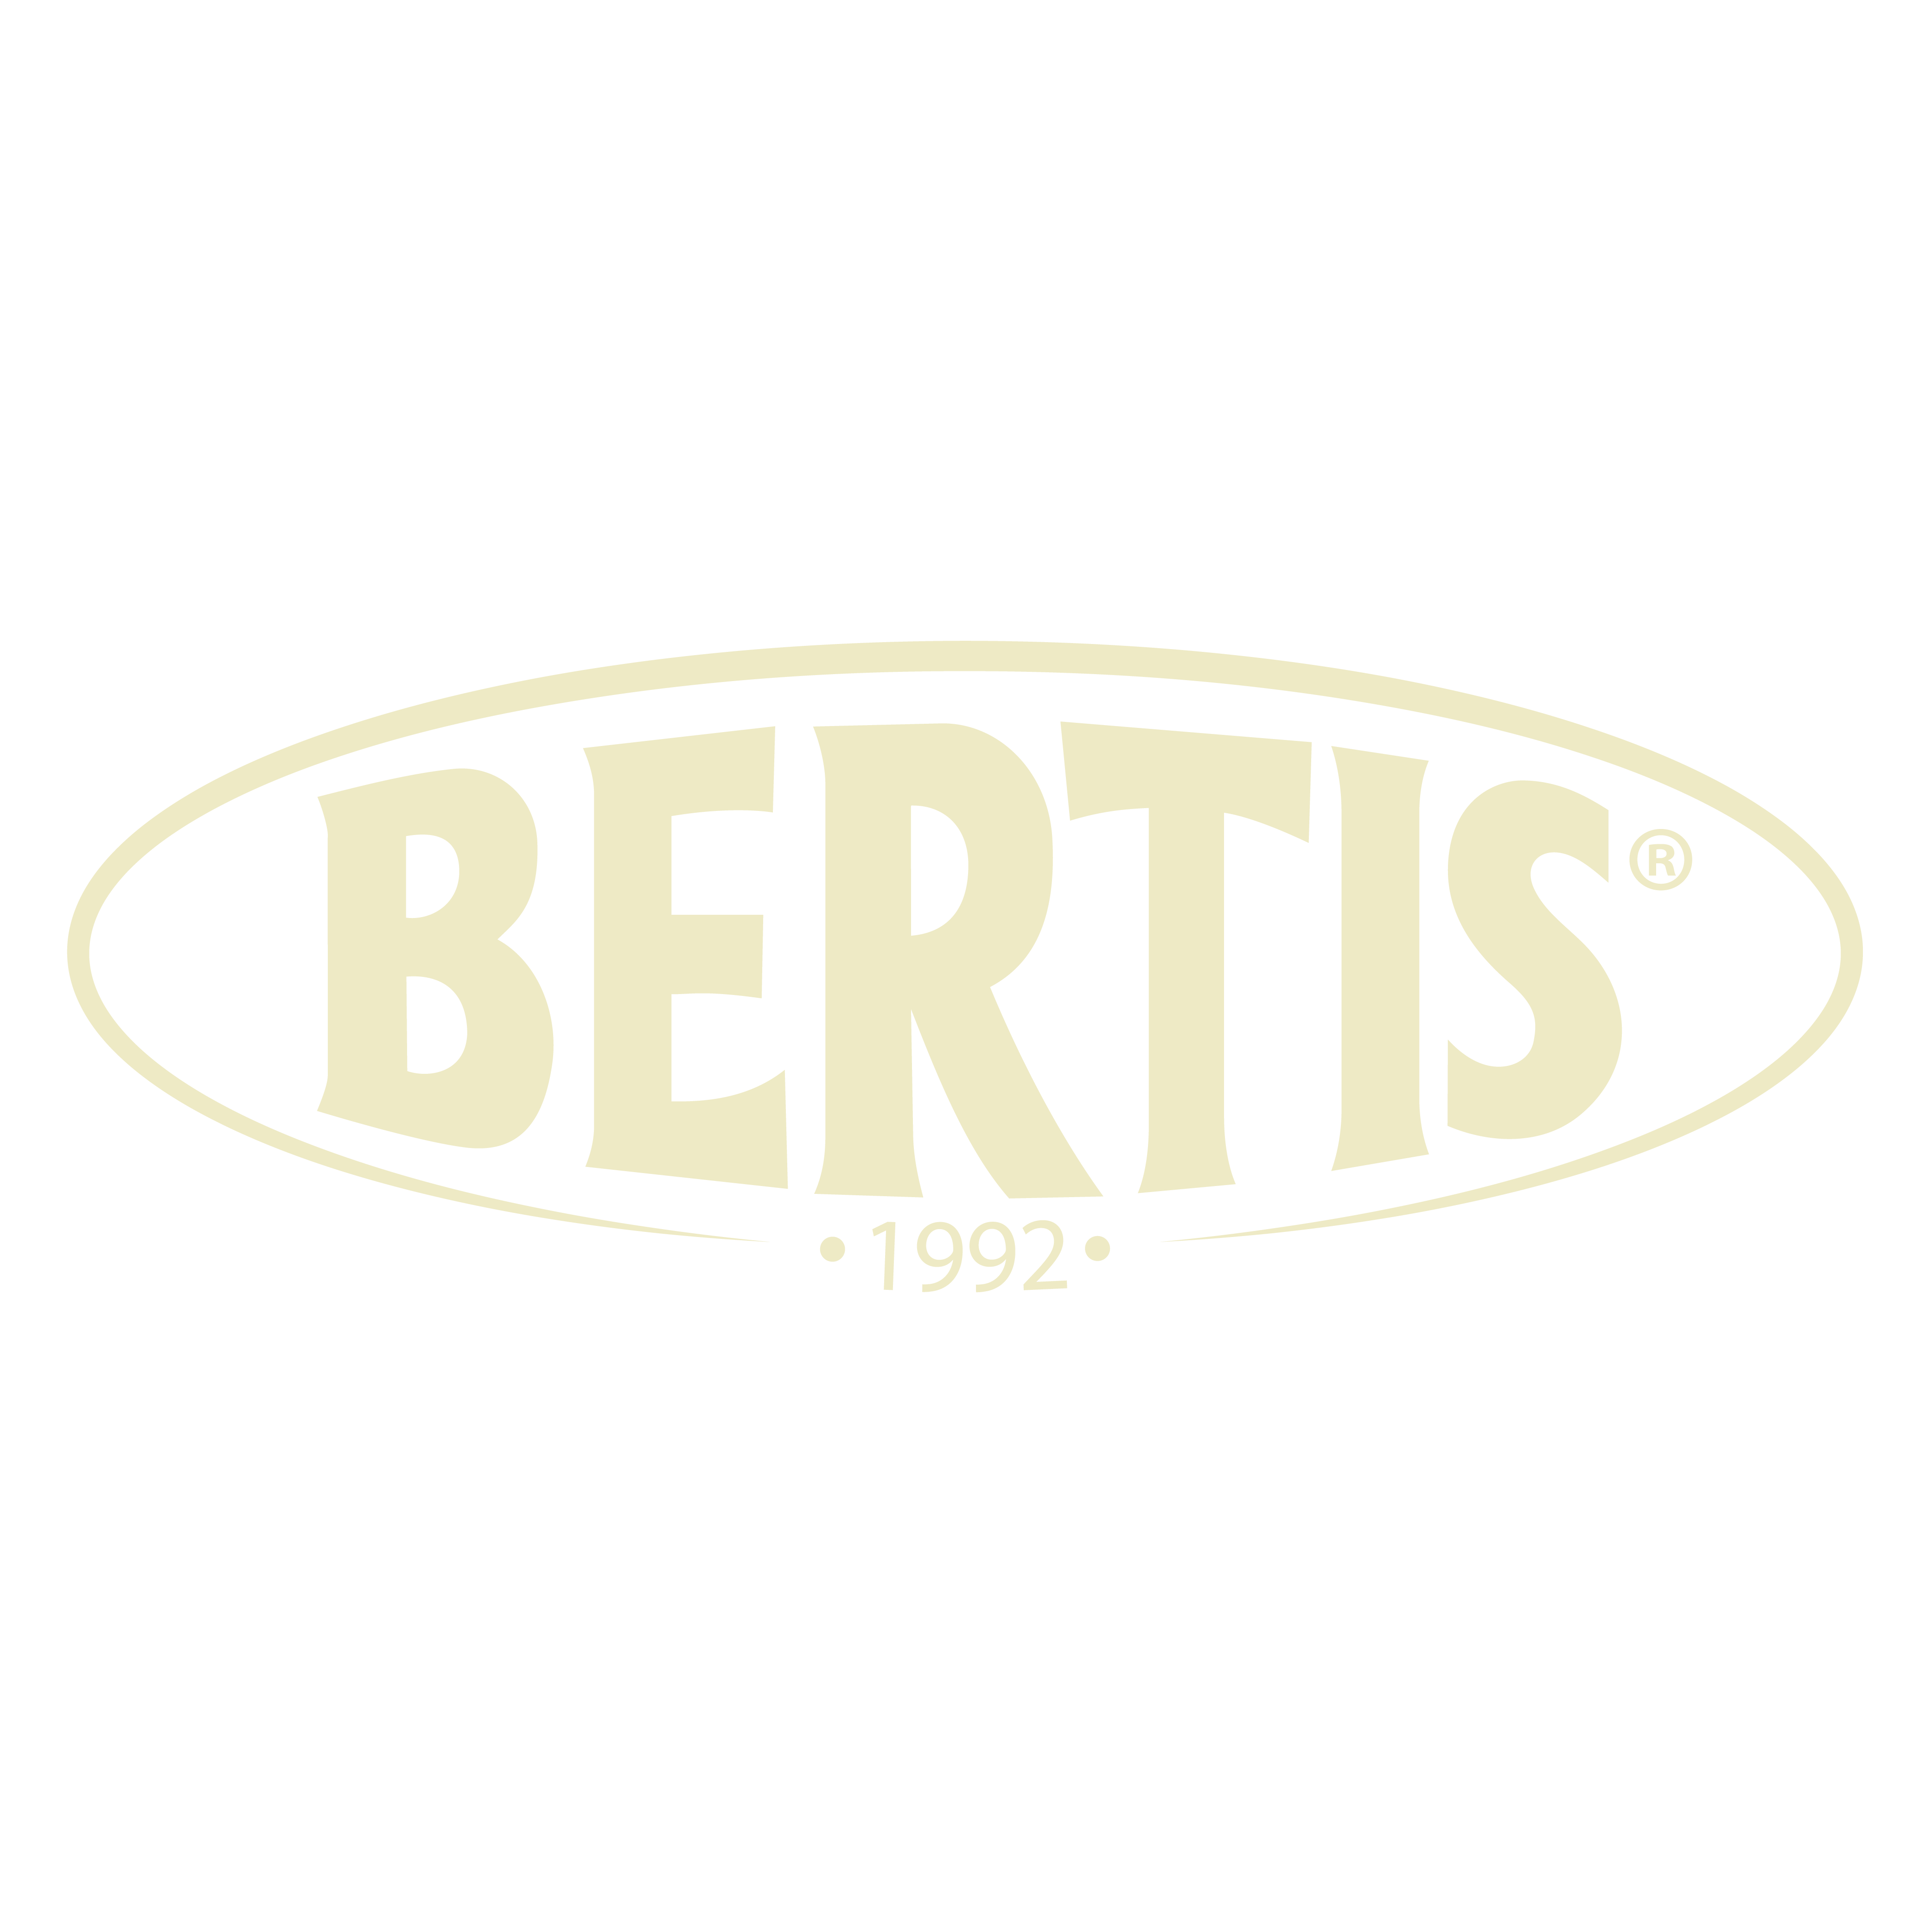 bertis